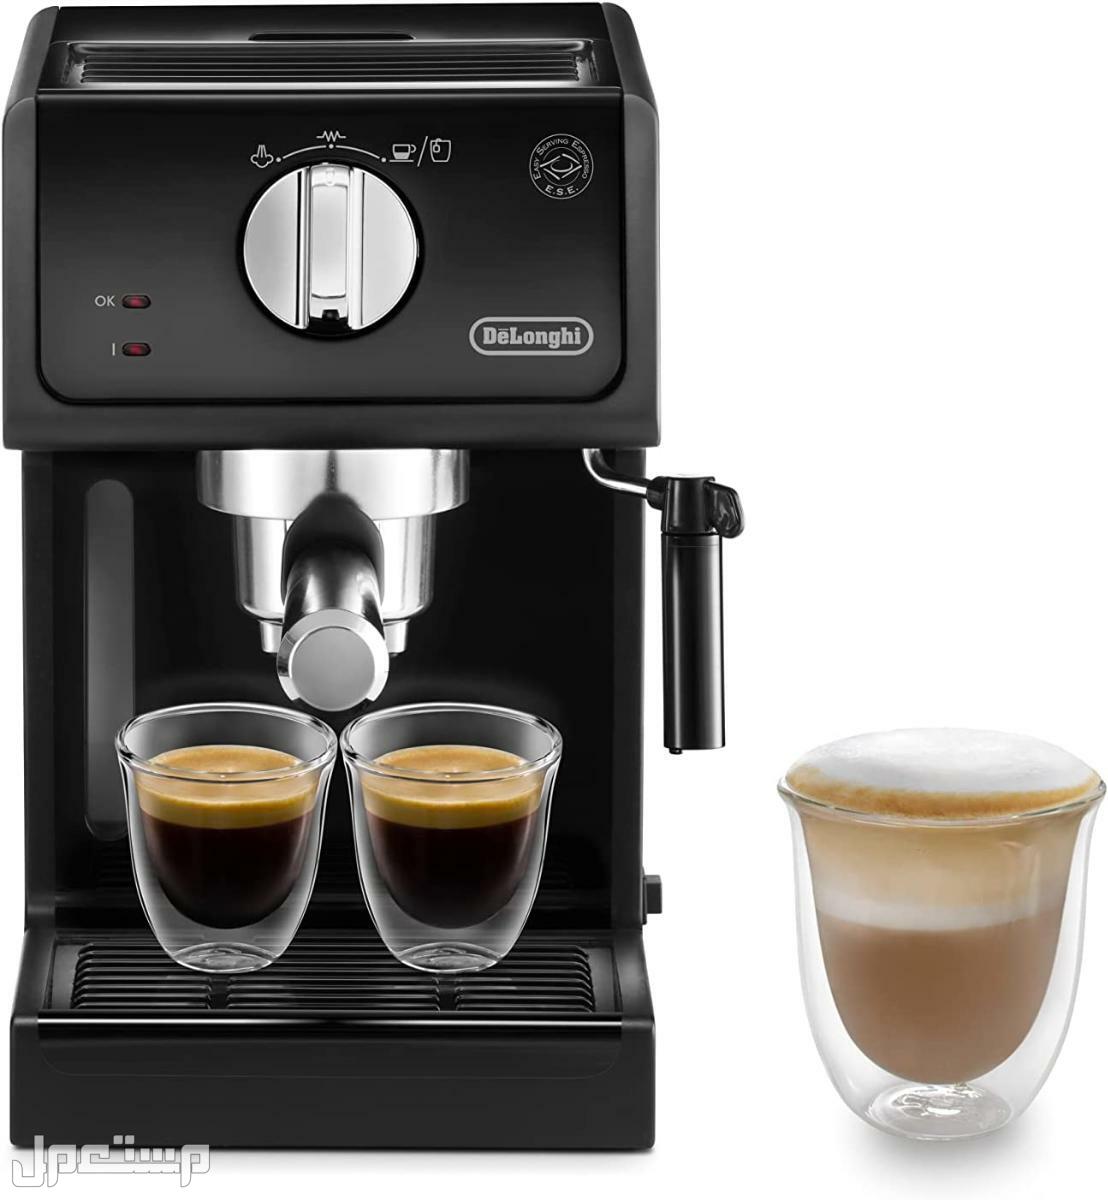 عيوب ومميزات ومواصفات وسعر ماكينة قهوة ديلونجى ديديكا في اليَمَن لماذا عليك شراء ماكينة قهوة ديلونجي ديديكا ؟